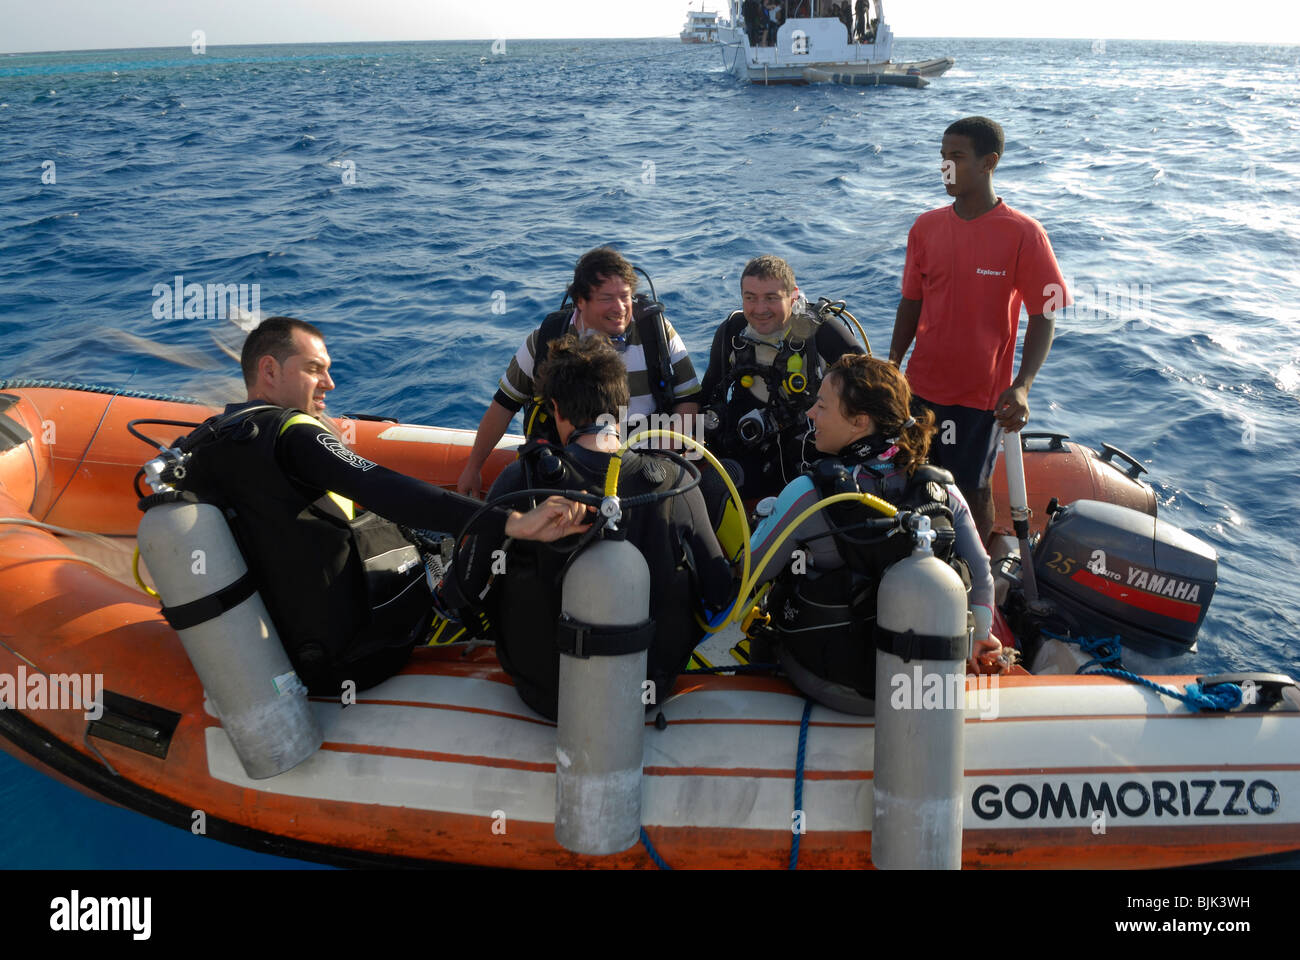 Heureux plongeurs sur un bateau gonflable prêt à plonger Banque D'Images